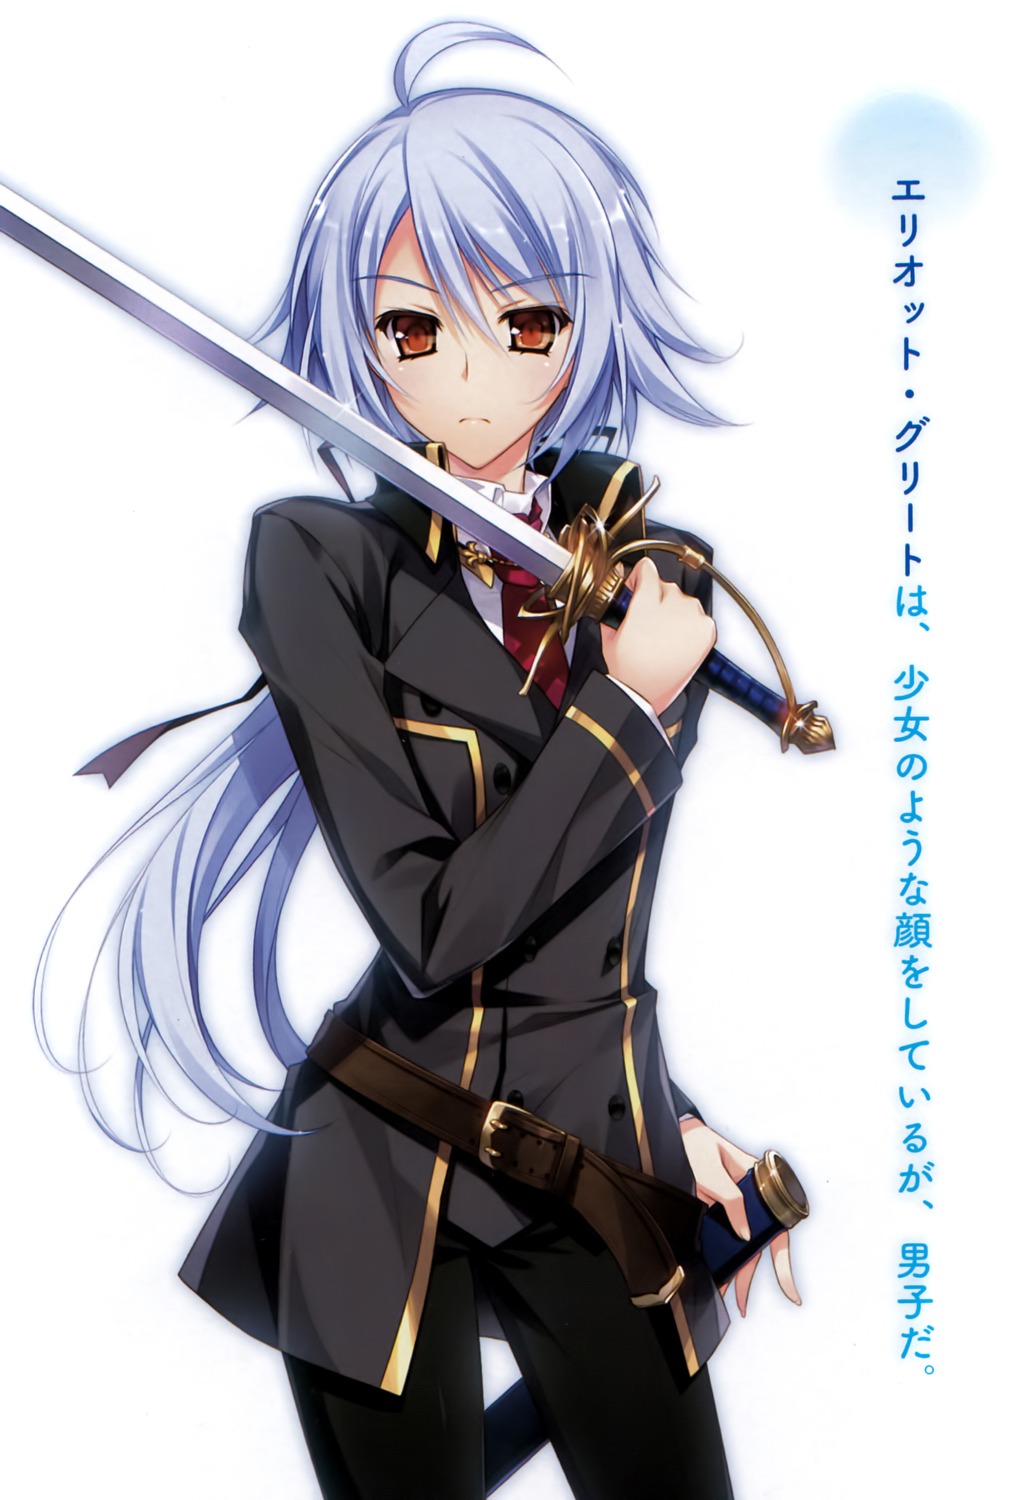 kenkoku_no_jungfrau sword yasaka_minato